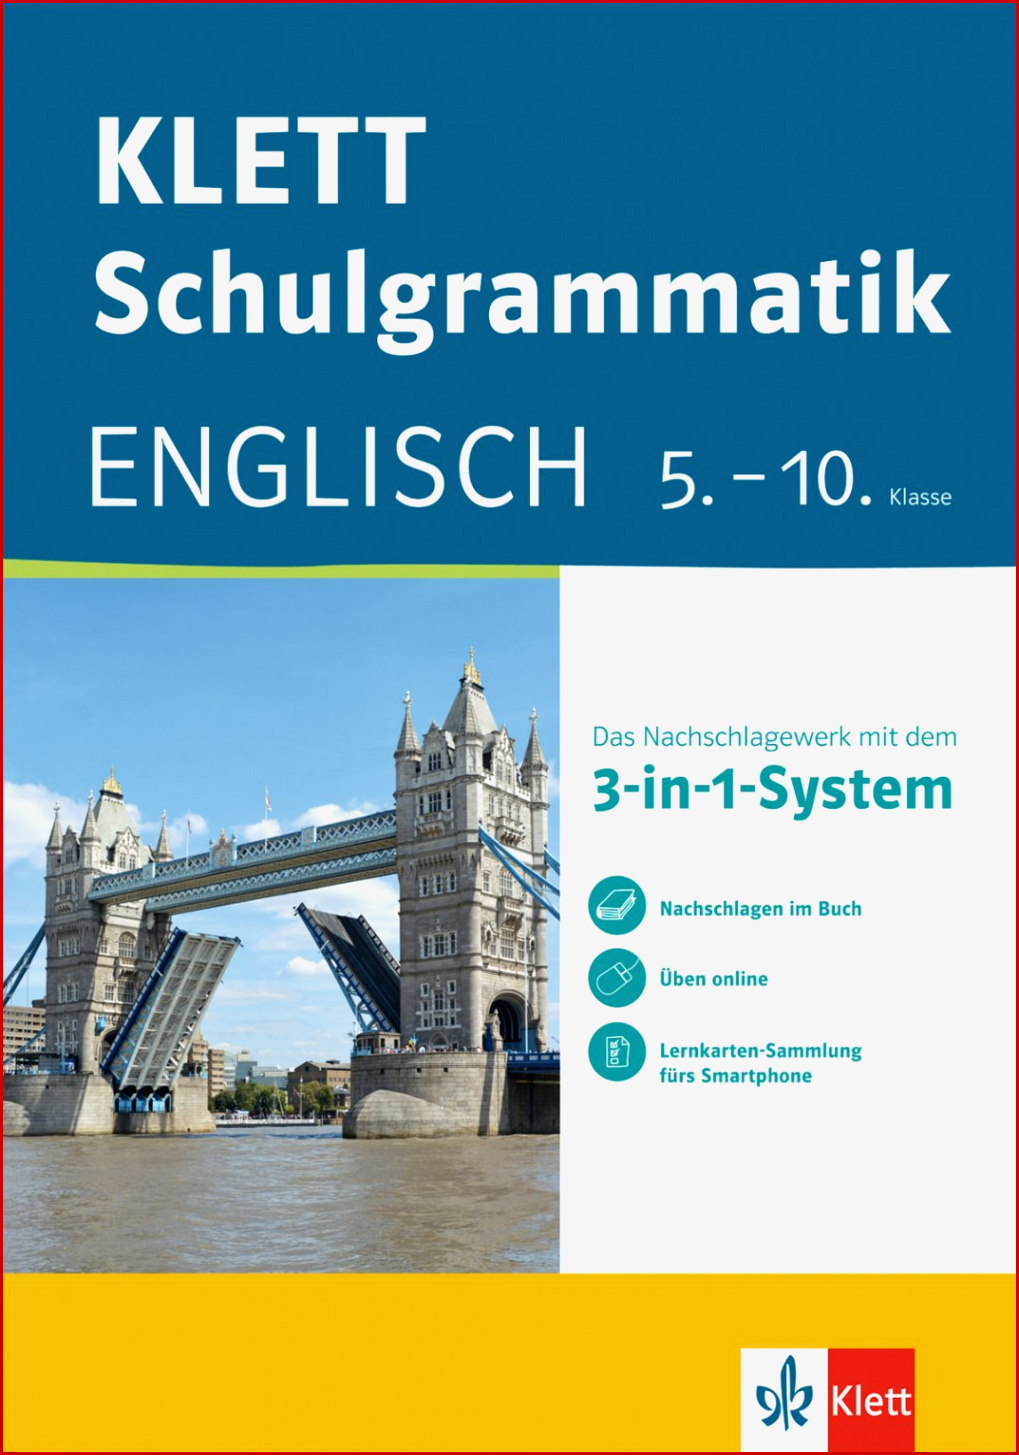 Klett-schulgrammatik - Englisch 5.-10. Klasse Mit Online-Ãbungen Und Mobile Lernkarten